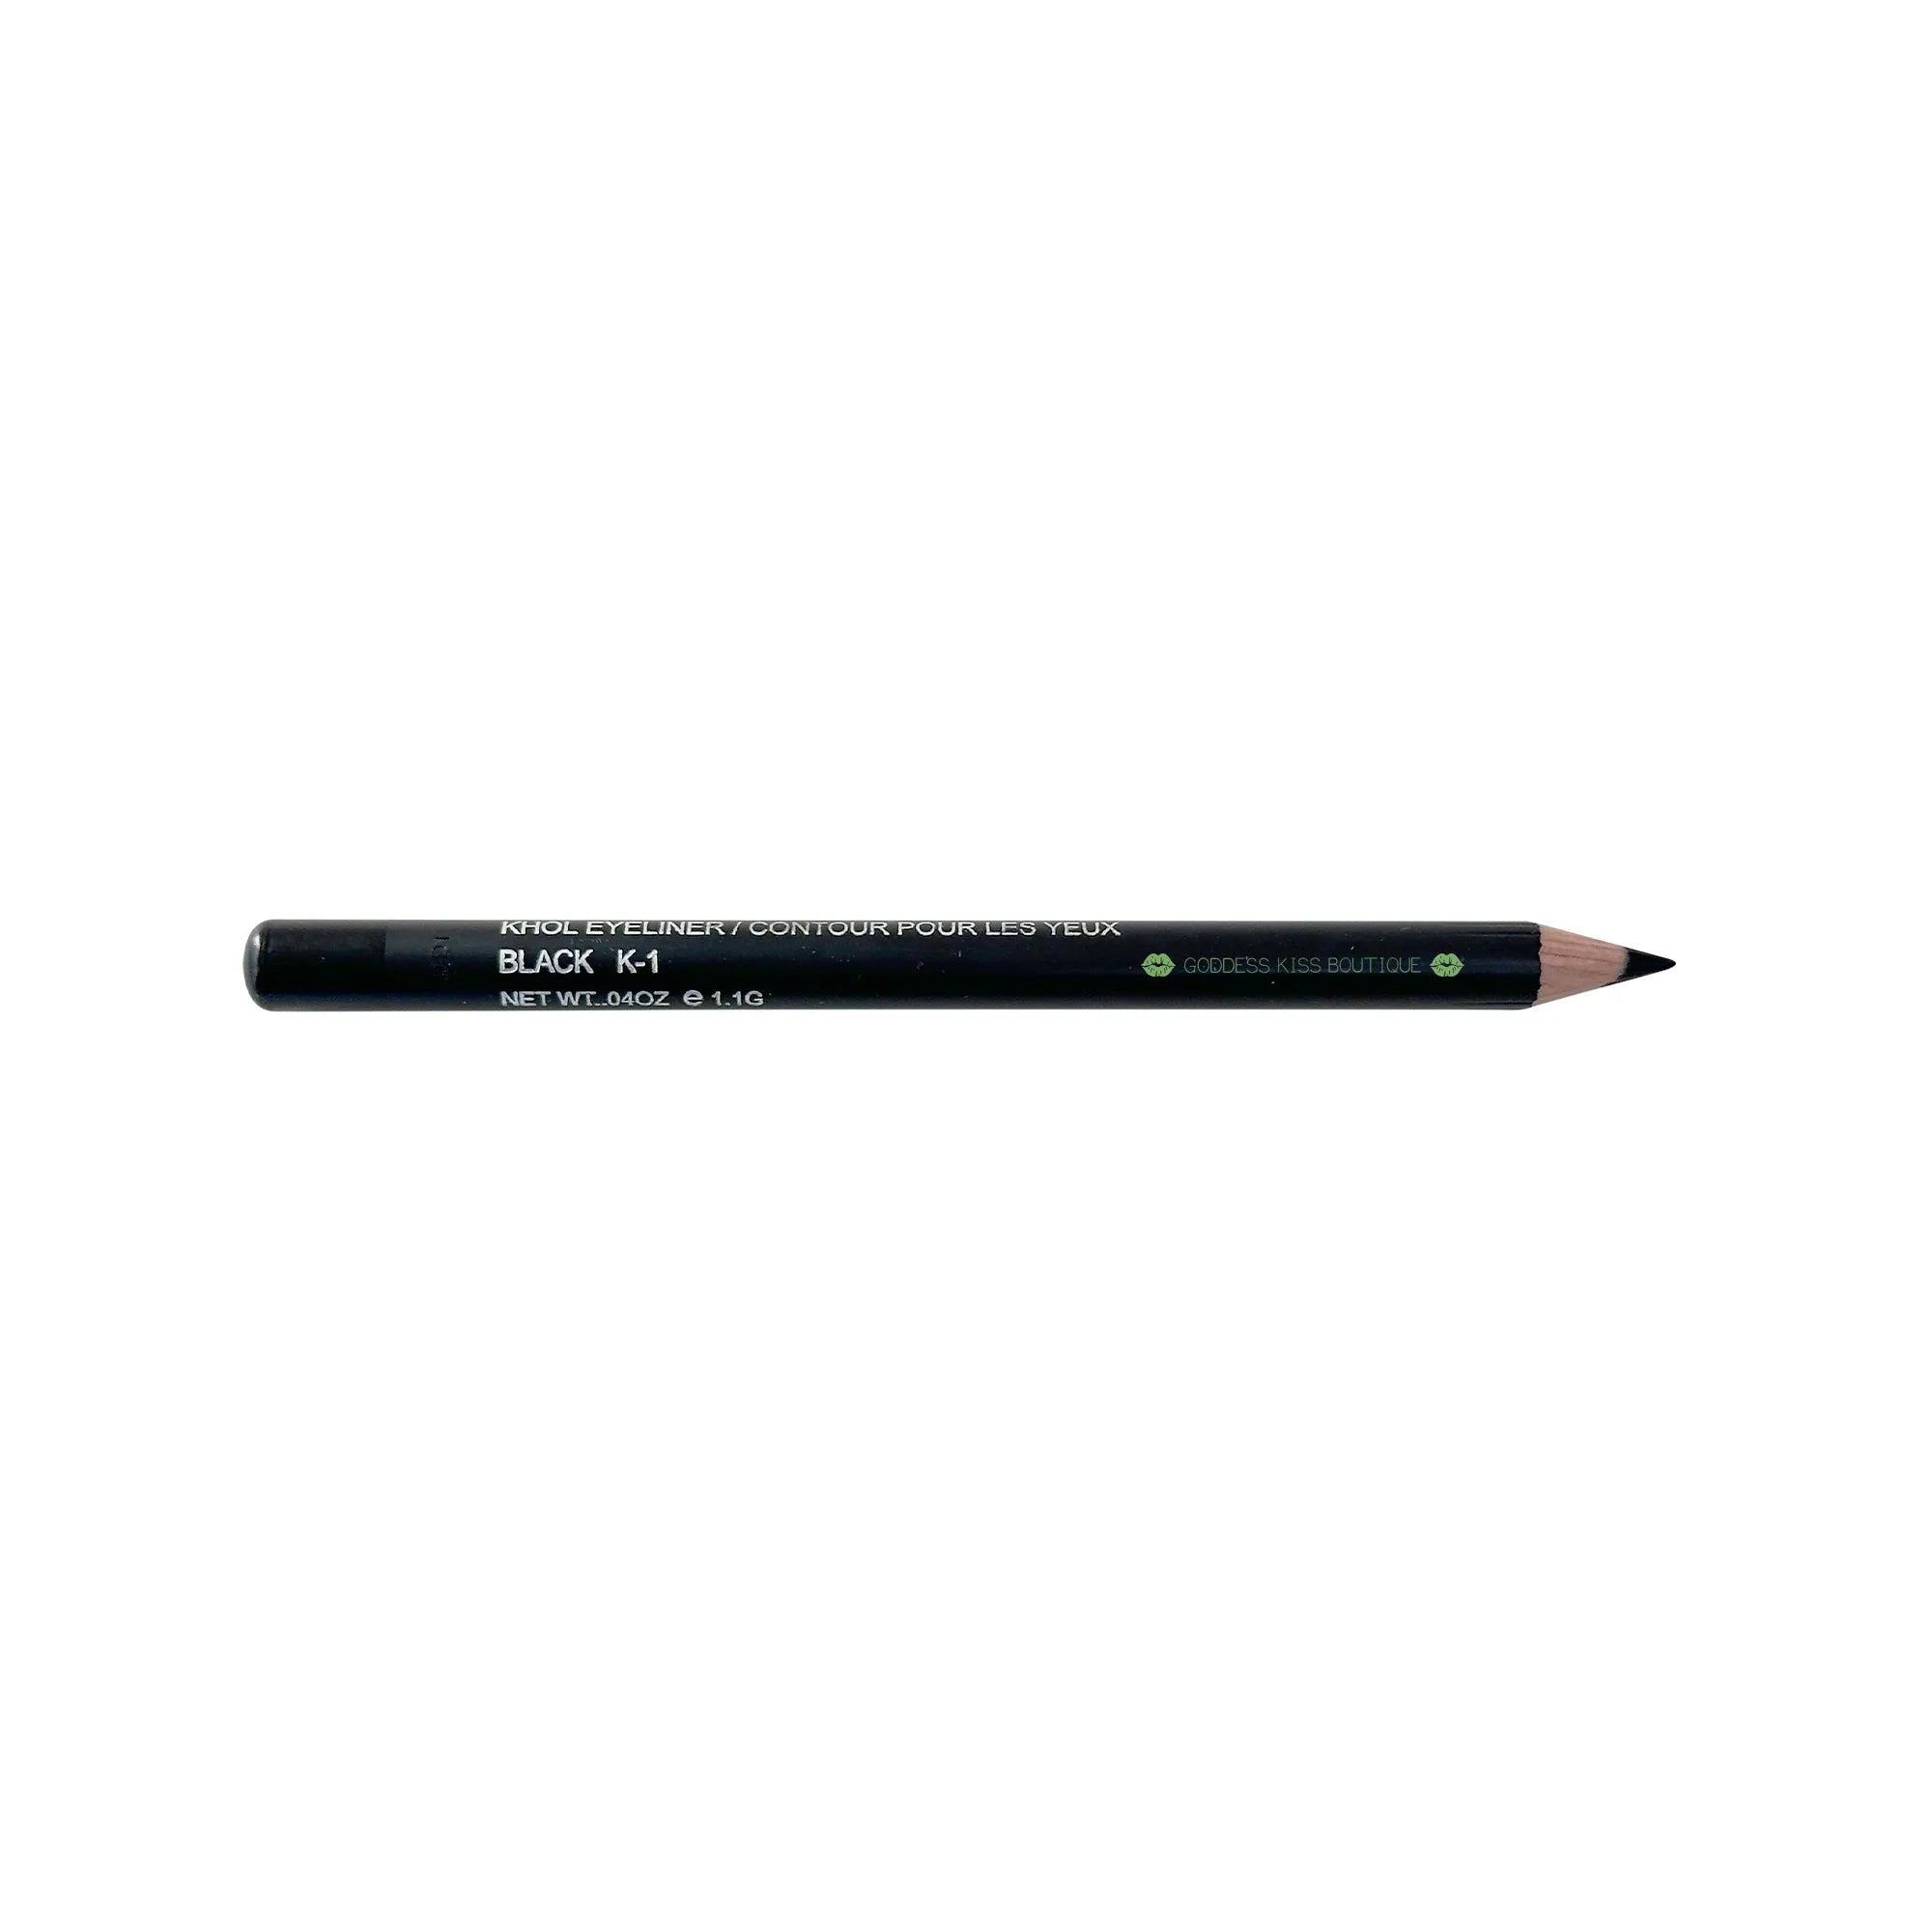 Khol Eyeliner Pencil - Black |  Intense Pigmentation, Long-Lasting Formula - Smudge & Blend -  Made in North America